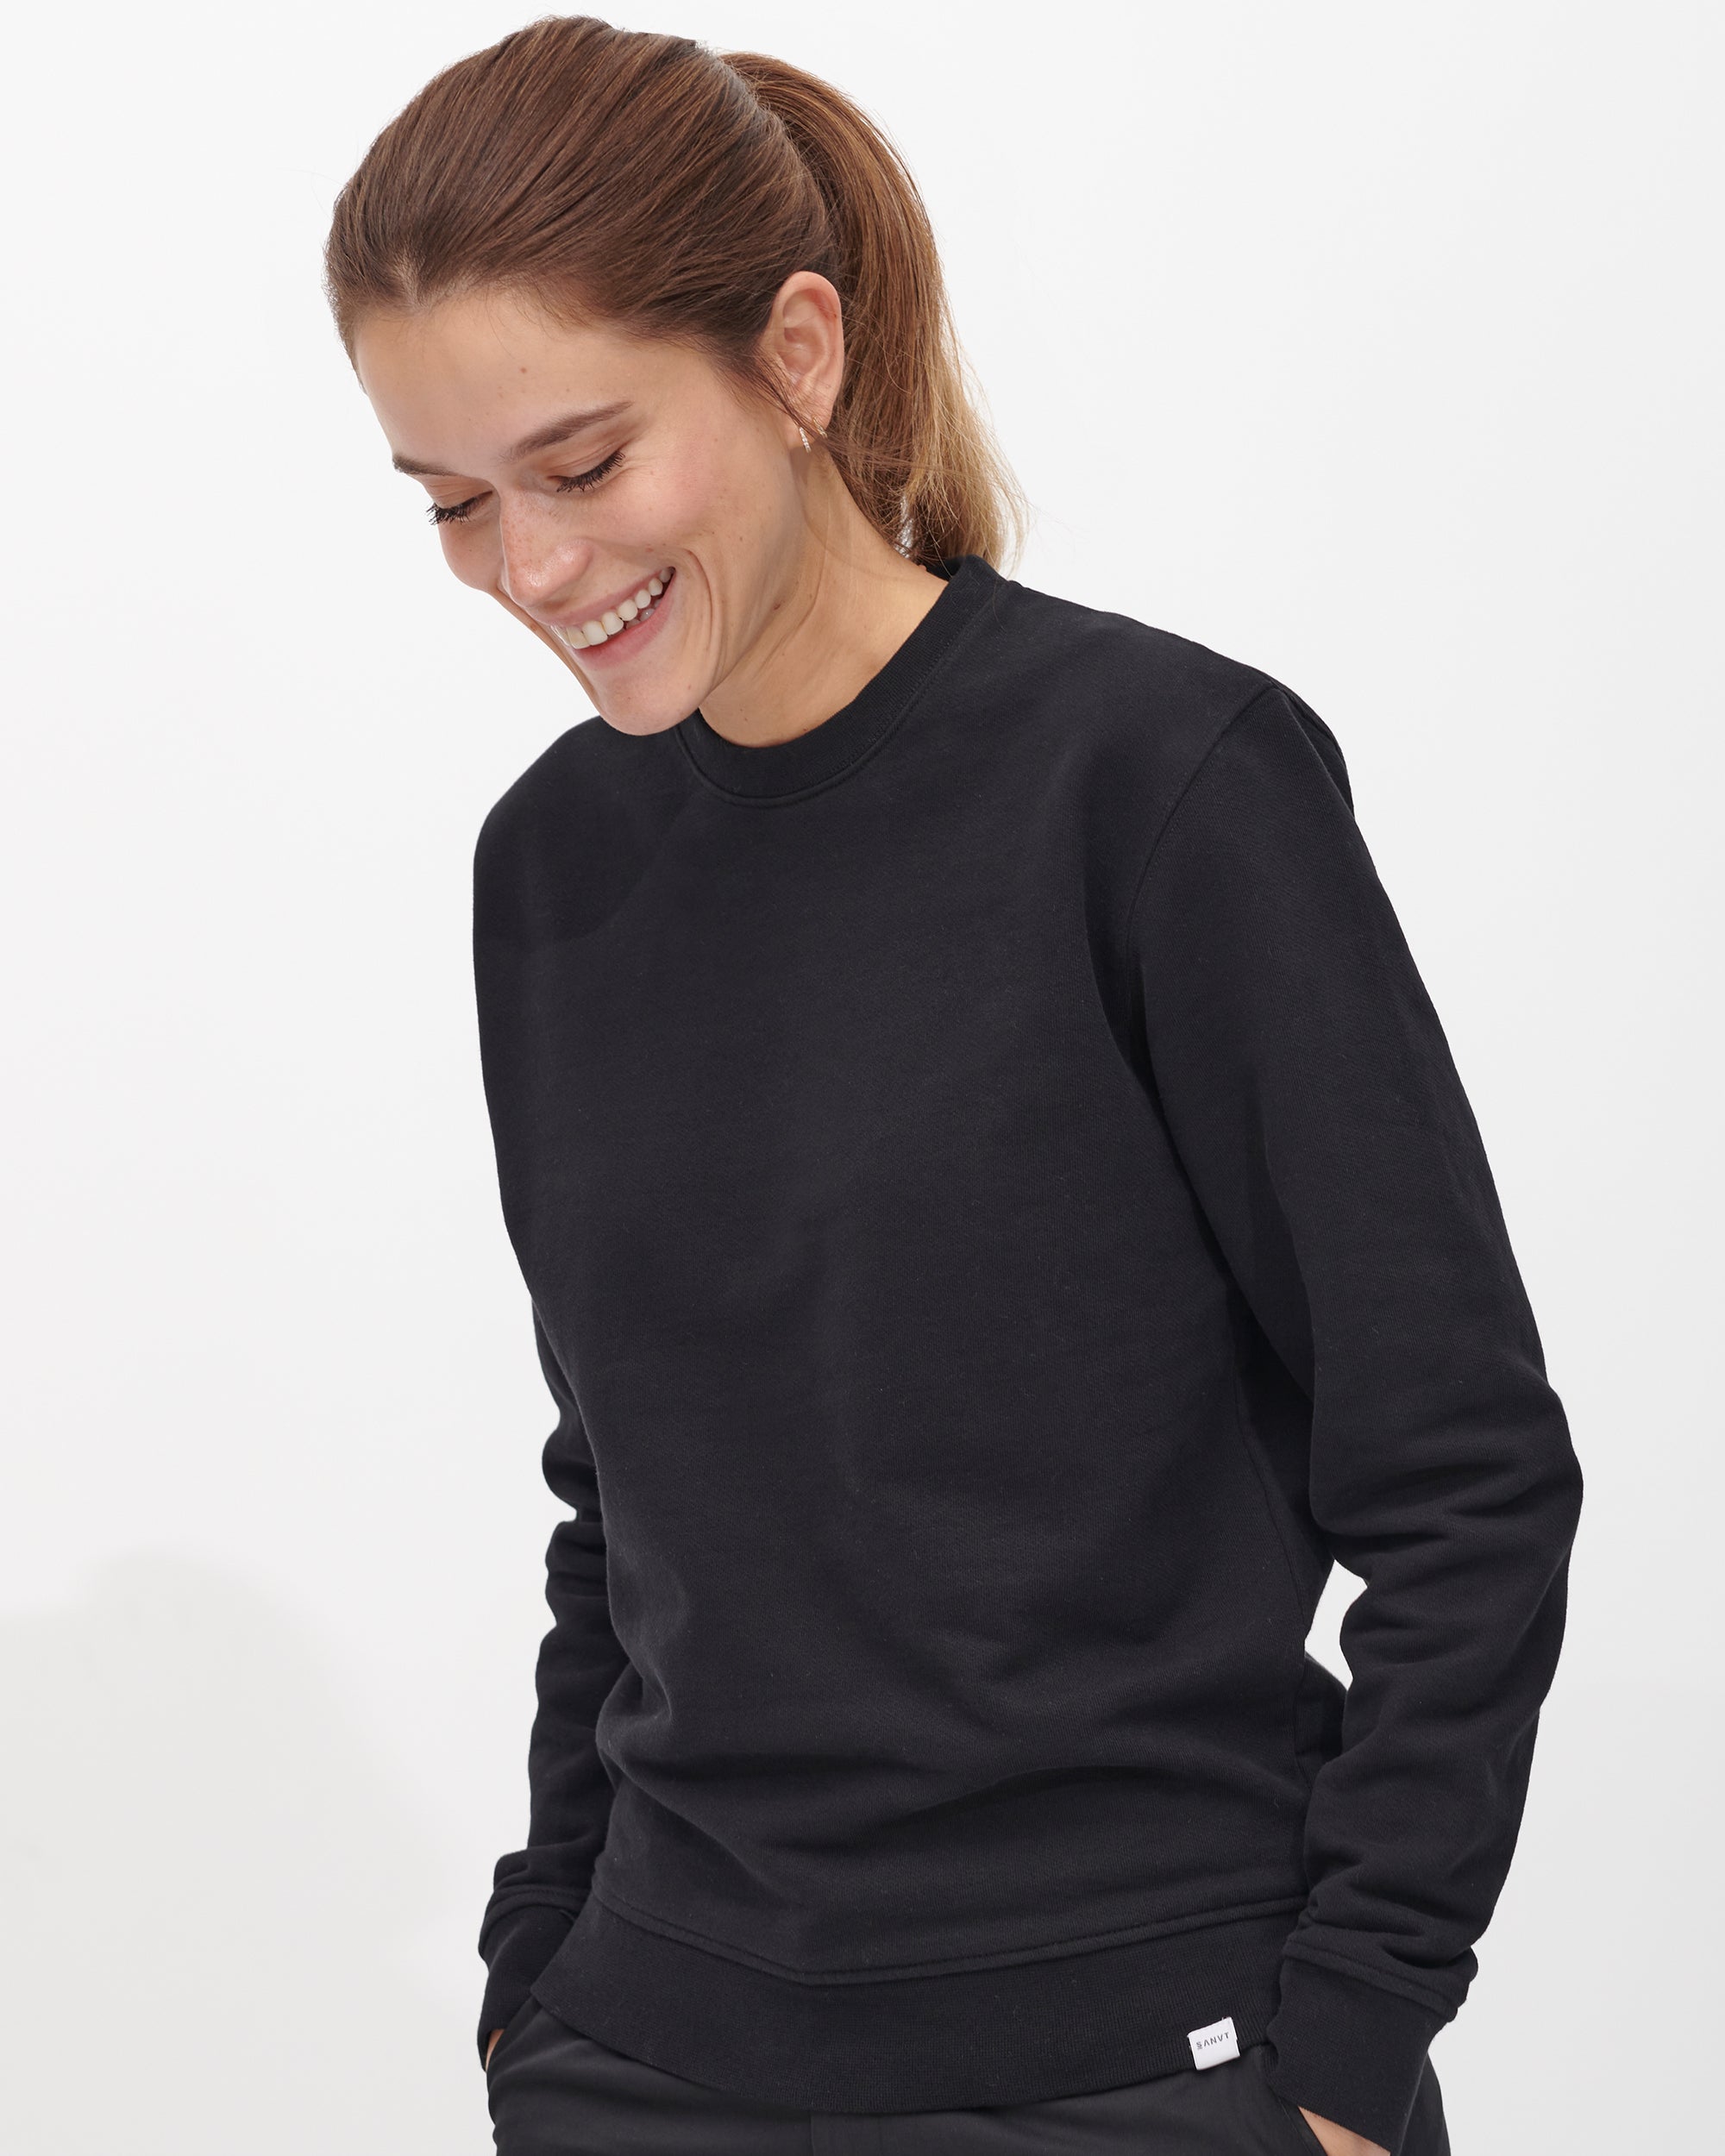 The Boyfriend Sweatshirt Unisex Cotton Sweater